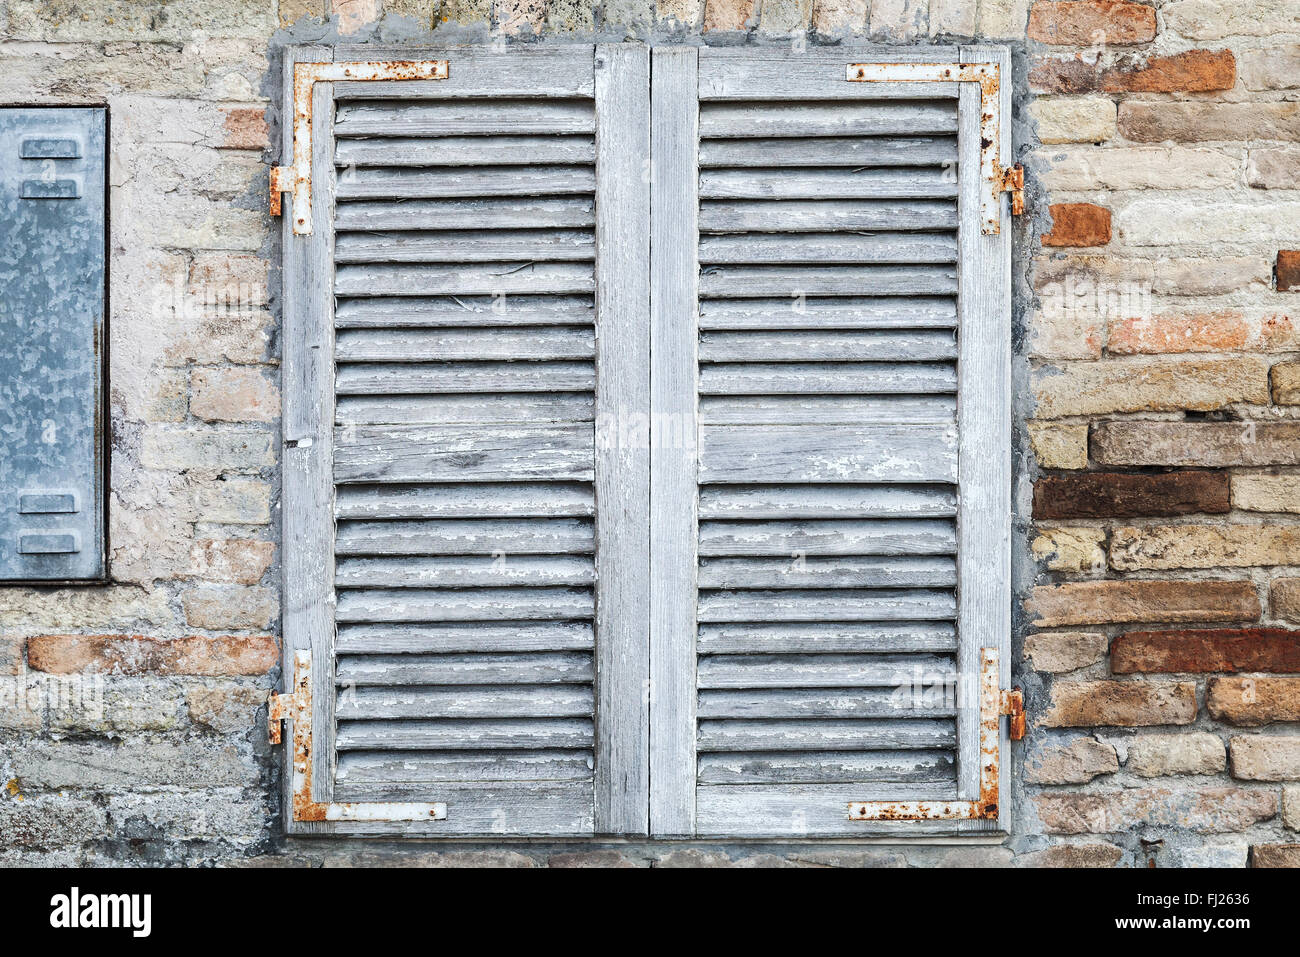 Alte Fenster mit weißen geschlossenen Fensterläden aus Holz in Ziegelmauer Hintergrundtextur Foto Stockfoto